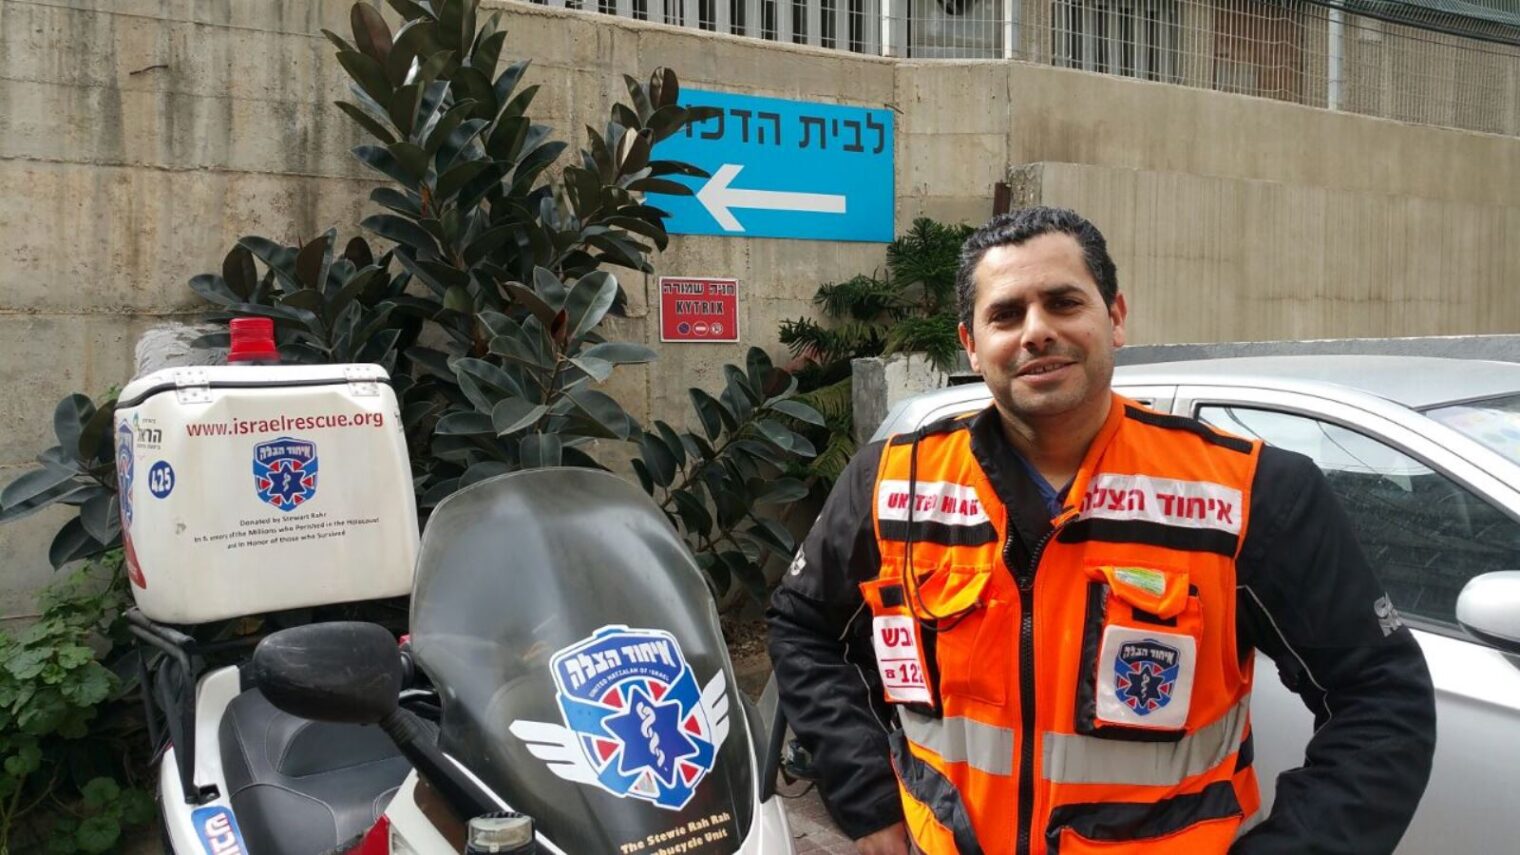 Avraham Levi of Netanya responded to 236 medical emergencies during January 2017. Photo courtesy of United Hatzalah